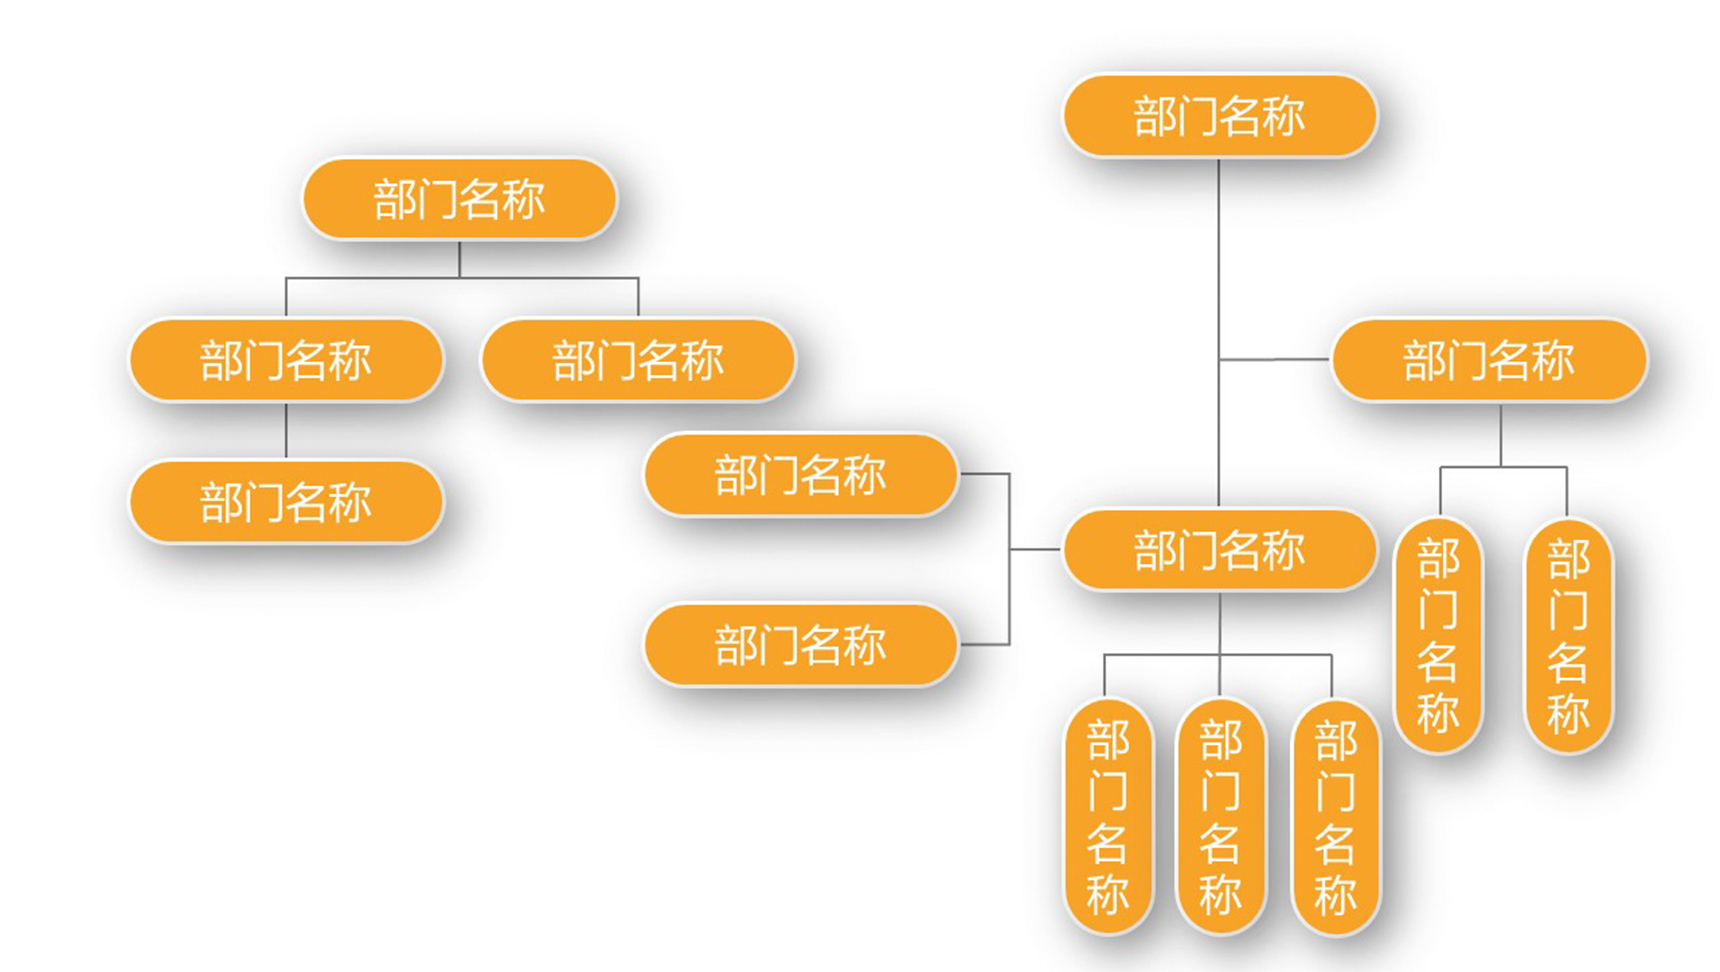 黄色部门名称组织结构图PPT模板